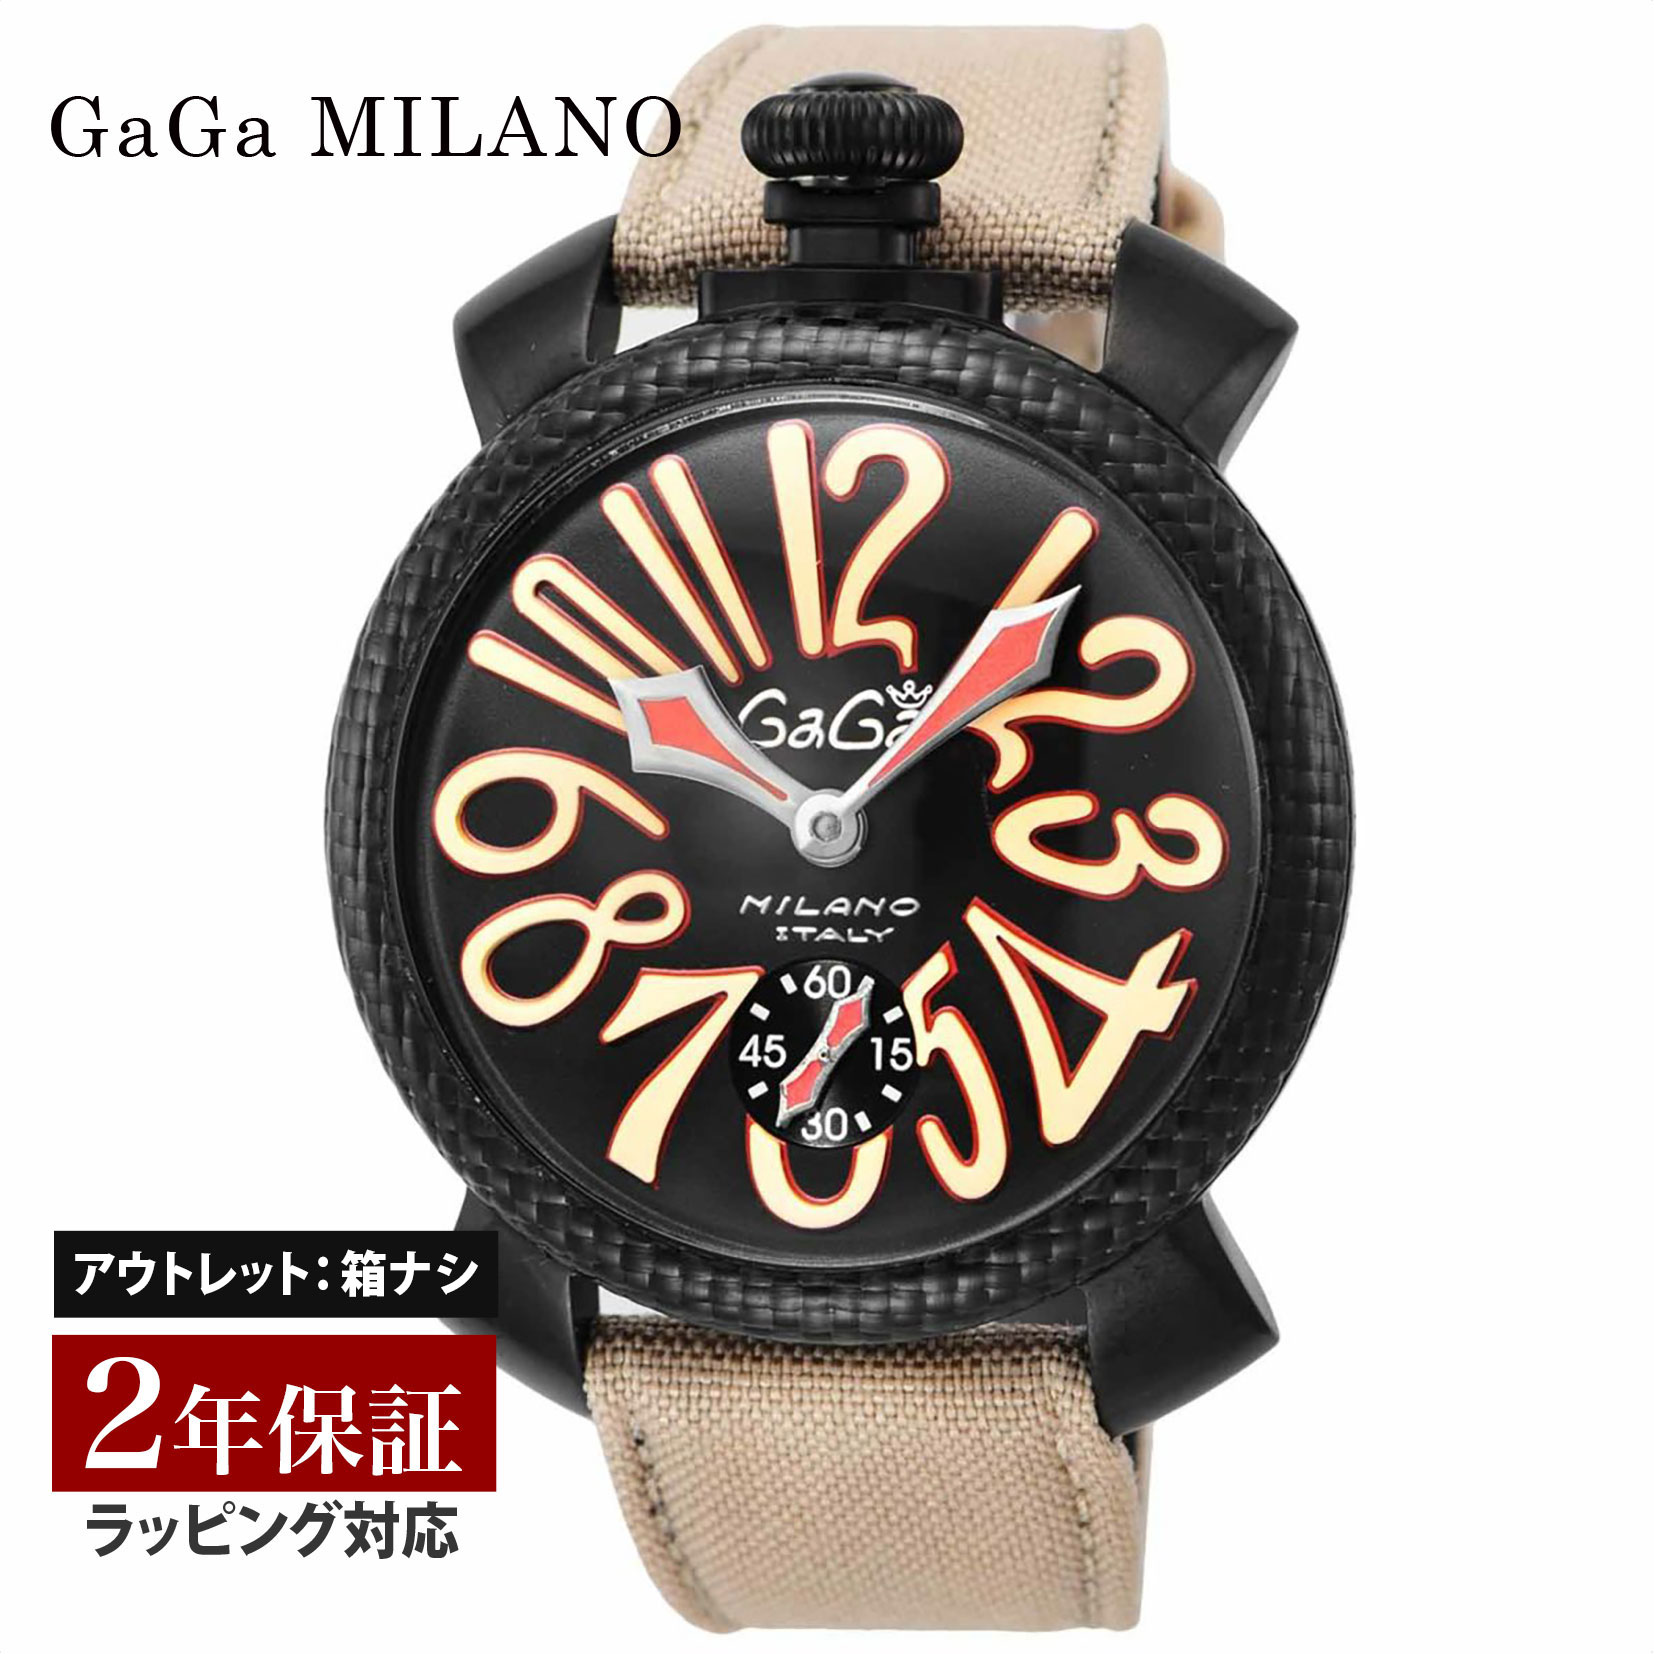 【クリアランスSALE】 GaGaMILAN ガガミラノ MANUALE 48MM メンズ スイス製 ガガ ミラノ 世界限定5個 手巻き ブラック 5016.9 腕時計 高級腕時計 ブランド 